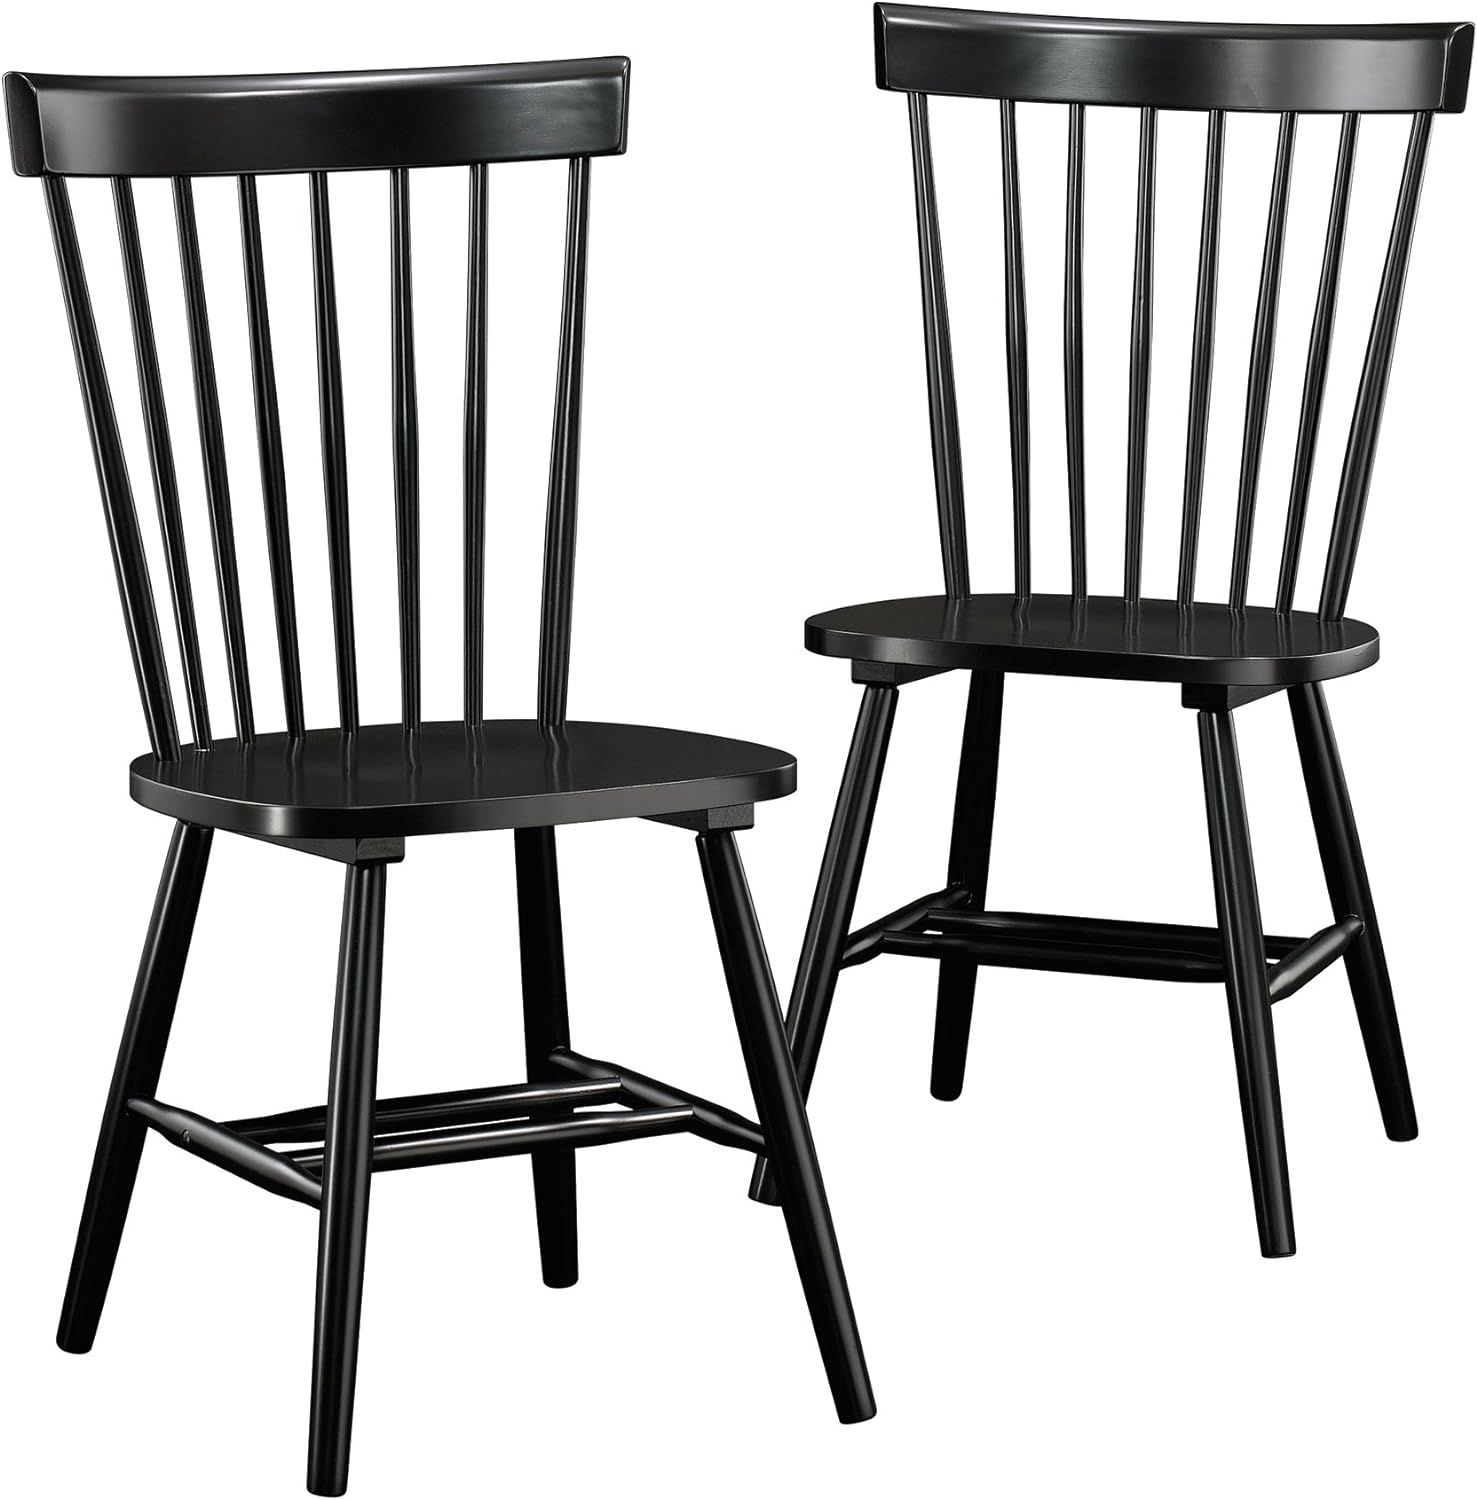 Sauder New Grange Spindle Back Chairs, Black finish | Amazon (US)